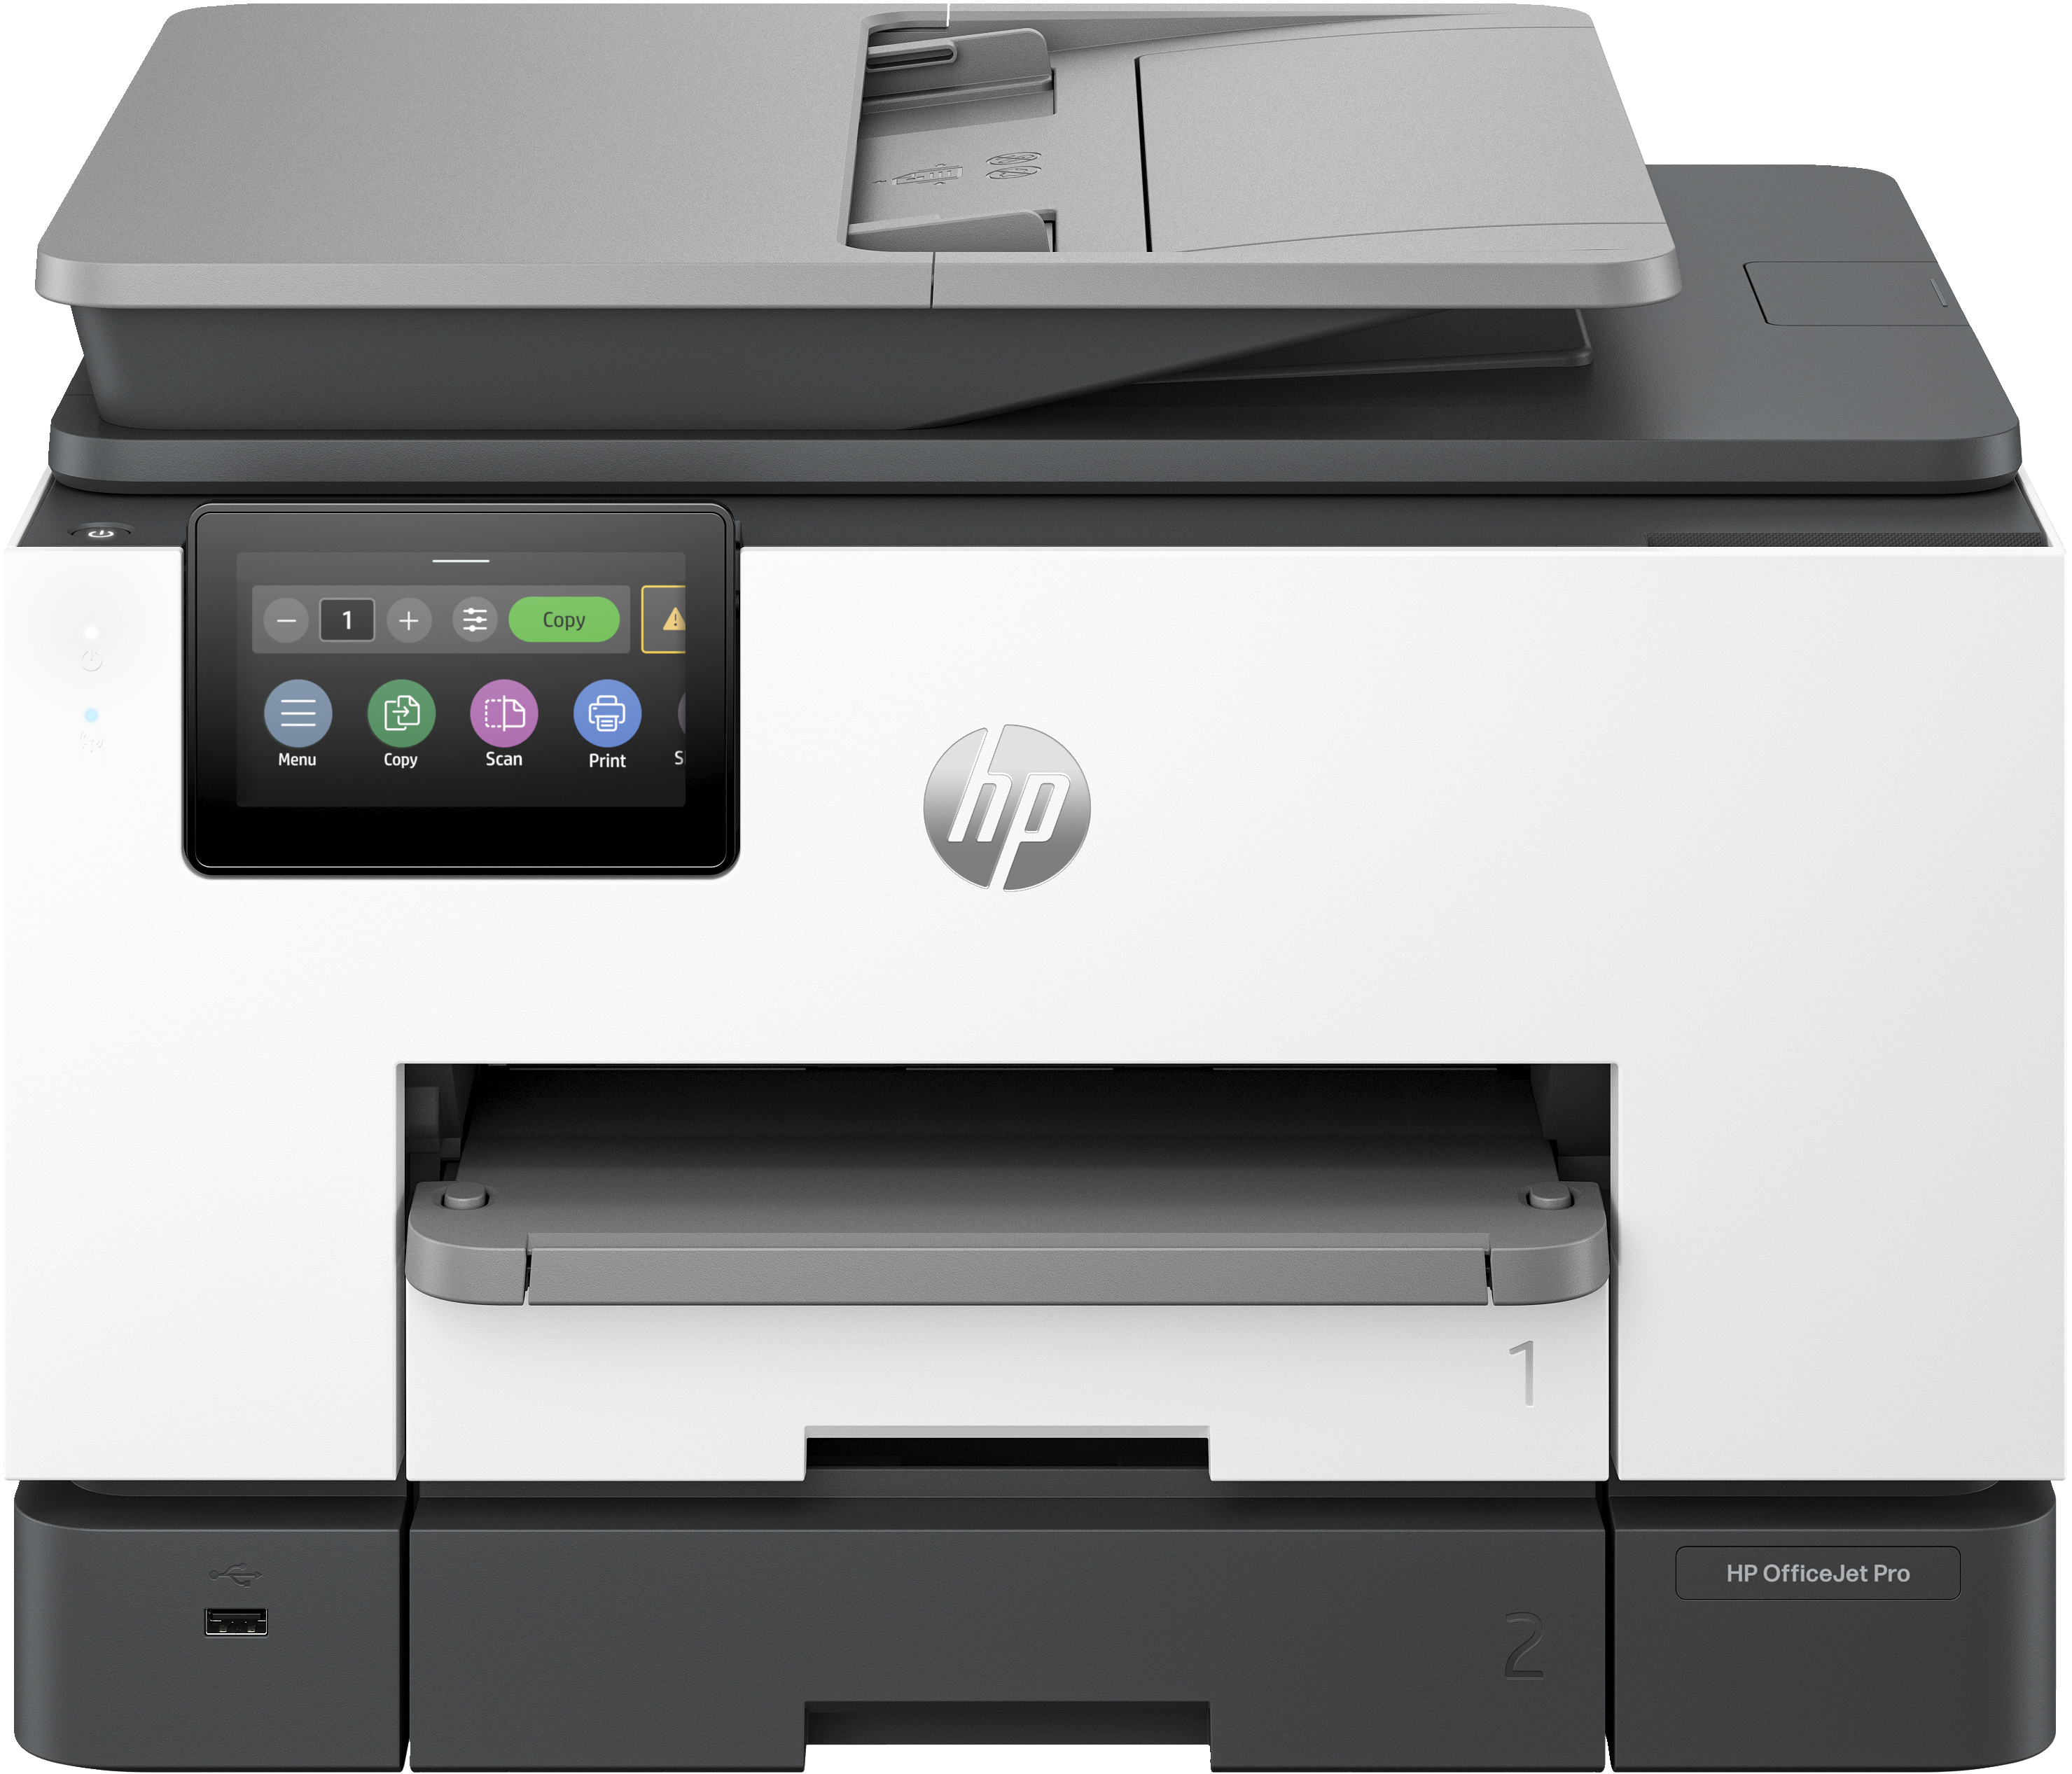 HP HP OfficeJet Pro 9132e All-in-One printer, Kleur, Printer voor Kleine en middelgrote ondernemingen, Printen, kopi&#235;ren, scannen, faxen, draadloos; HP+; geschikt voor HP Instant Ink; dubbelzijdig printen; dubbelzijdig scannen; automatische documentinvoer; faxen; touchscreen; Smart Advance Scan; instant papier